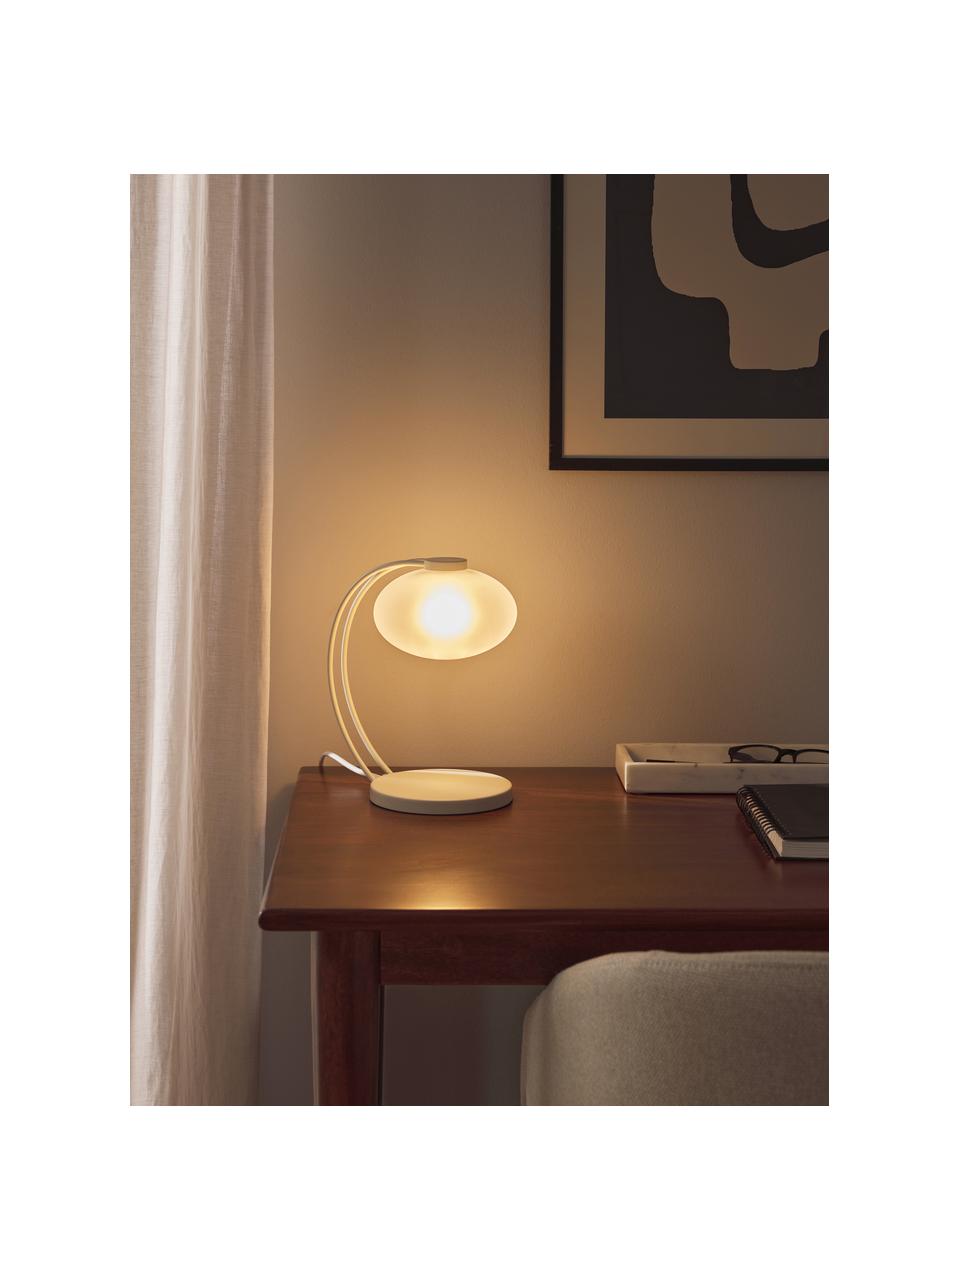 Lámpara de mesa pequeña Fay, Pantalla: vidrio opalino, Estructura: metal recubierto, Cable: cubierto en tela, Blanco crema, An 15 x Al 25 cm